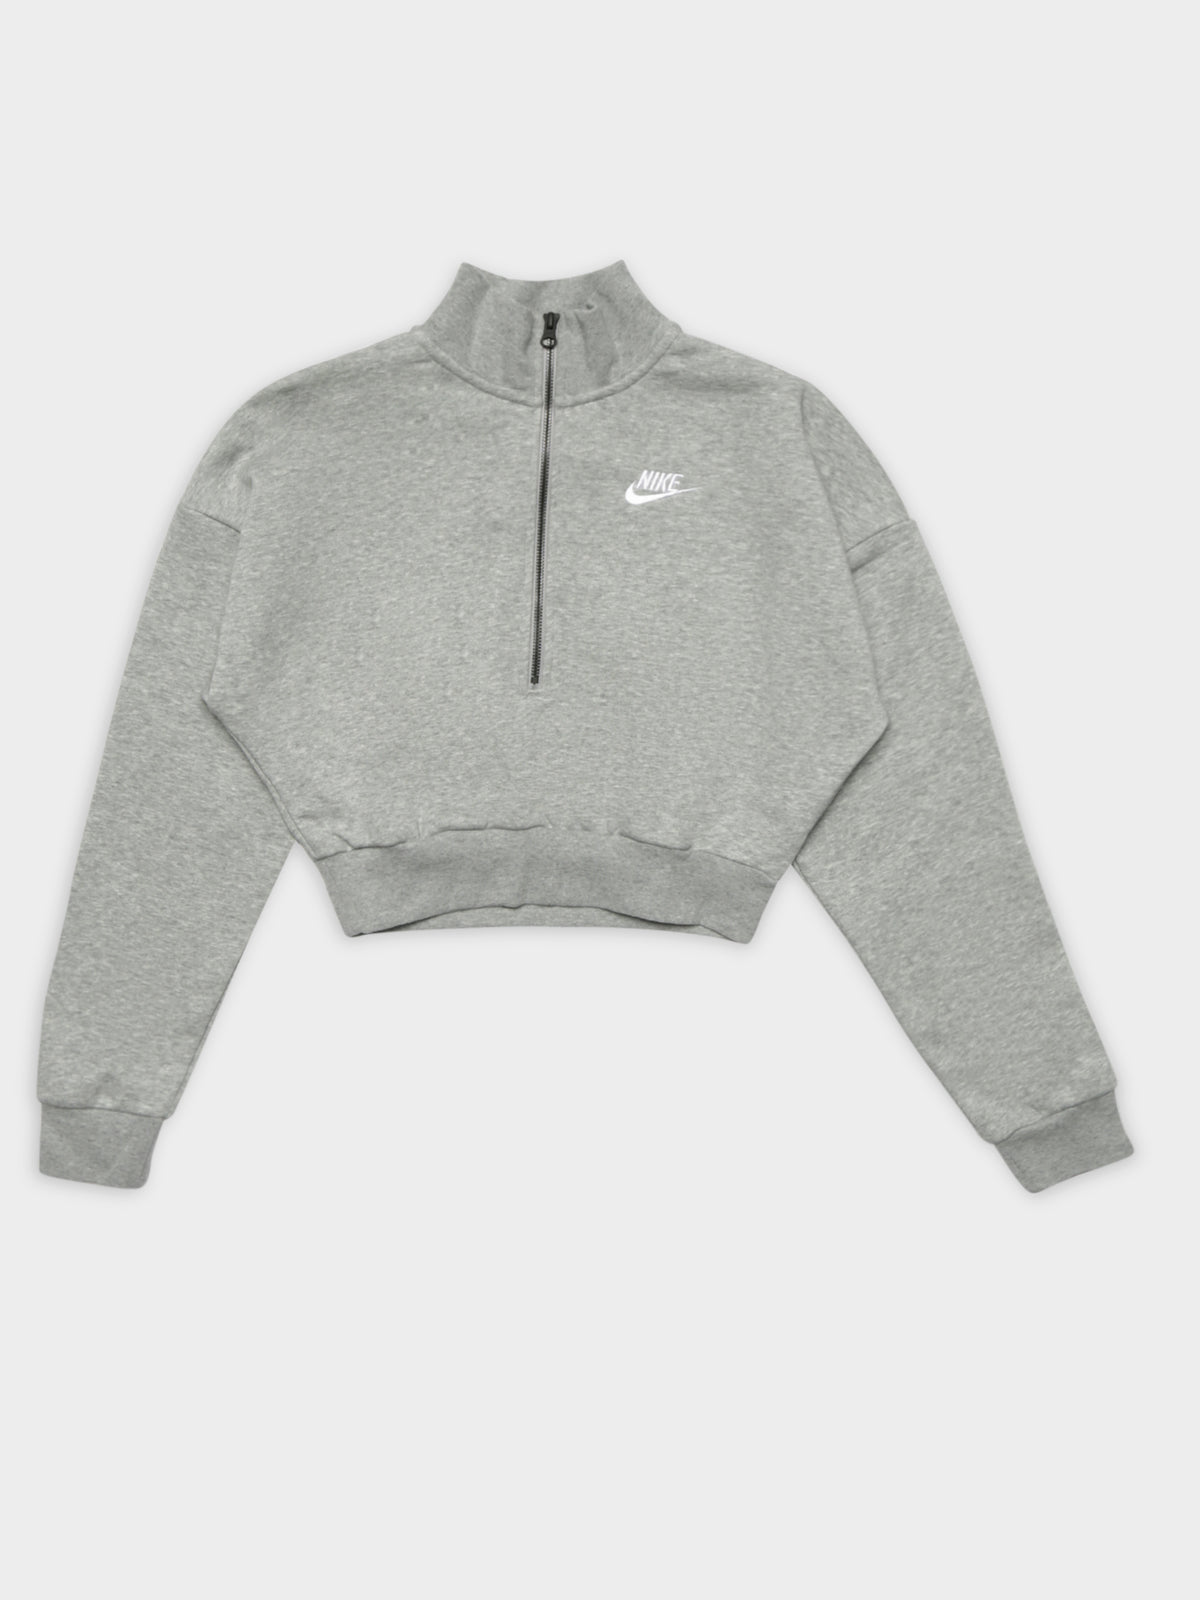 Sportswear Essential Fleece Long Sleeve Crop Top in Grey